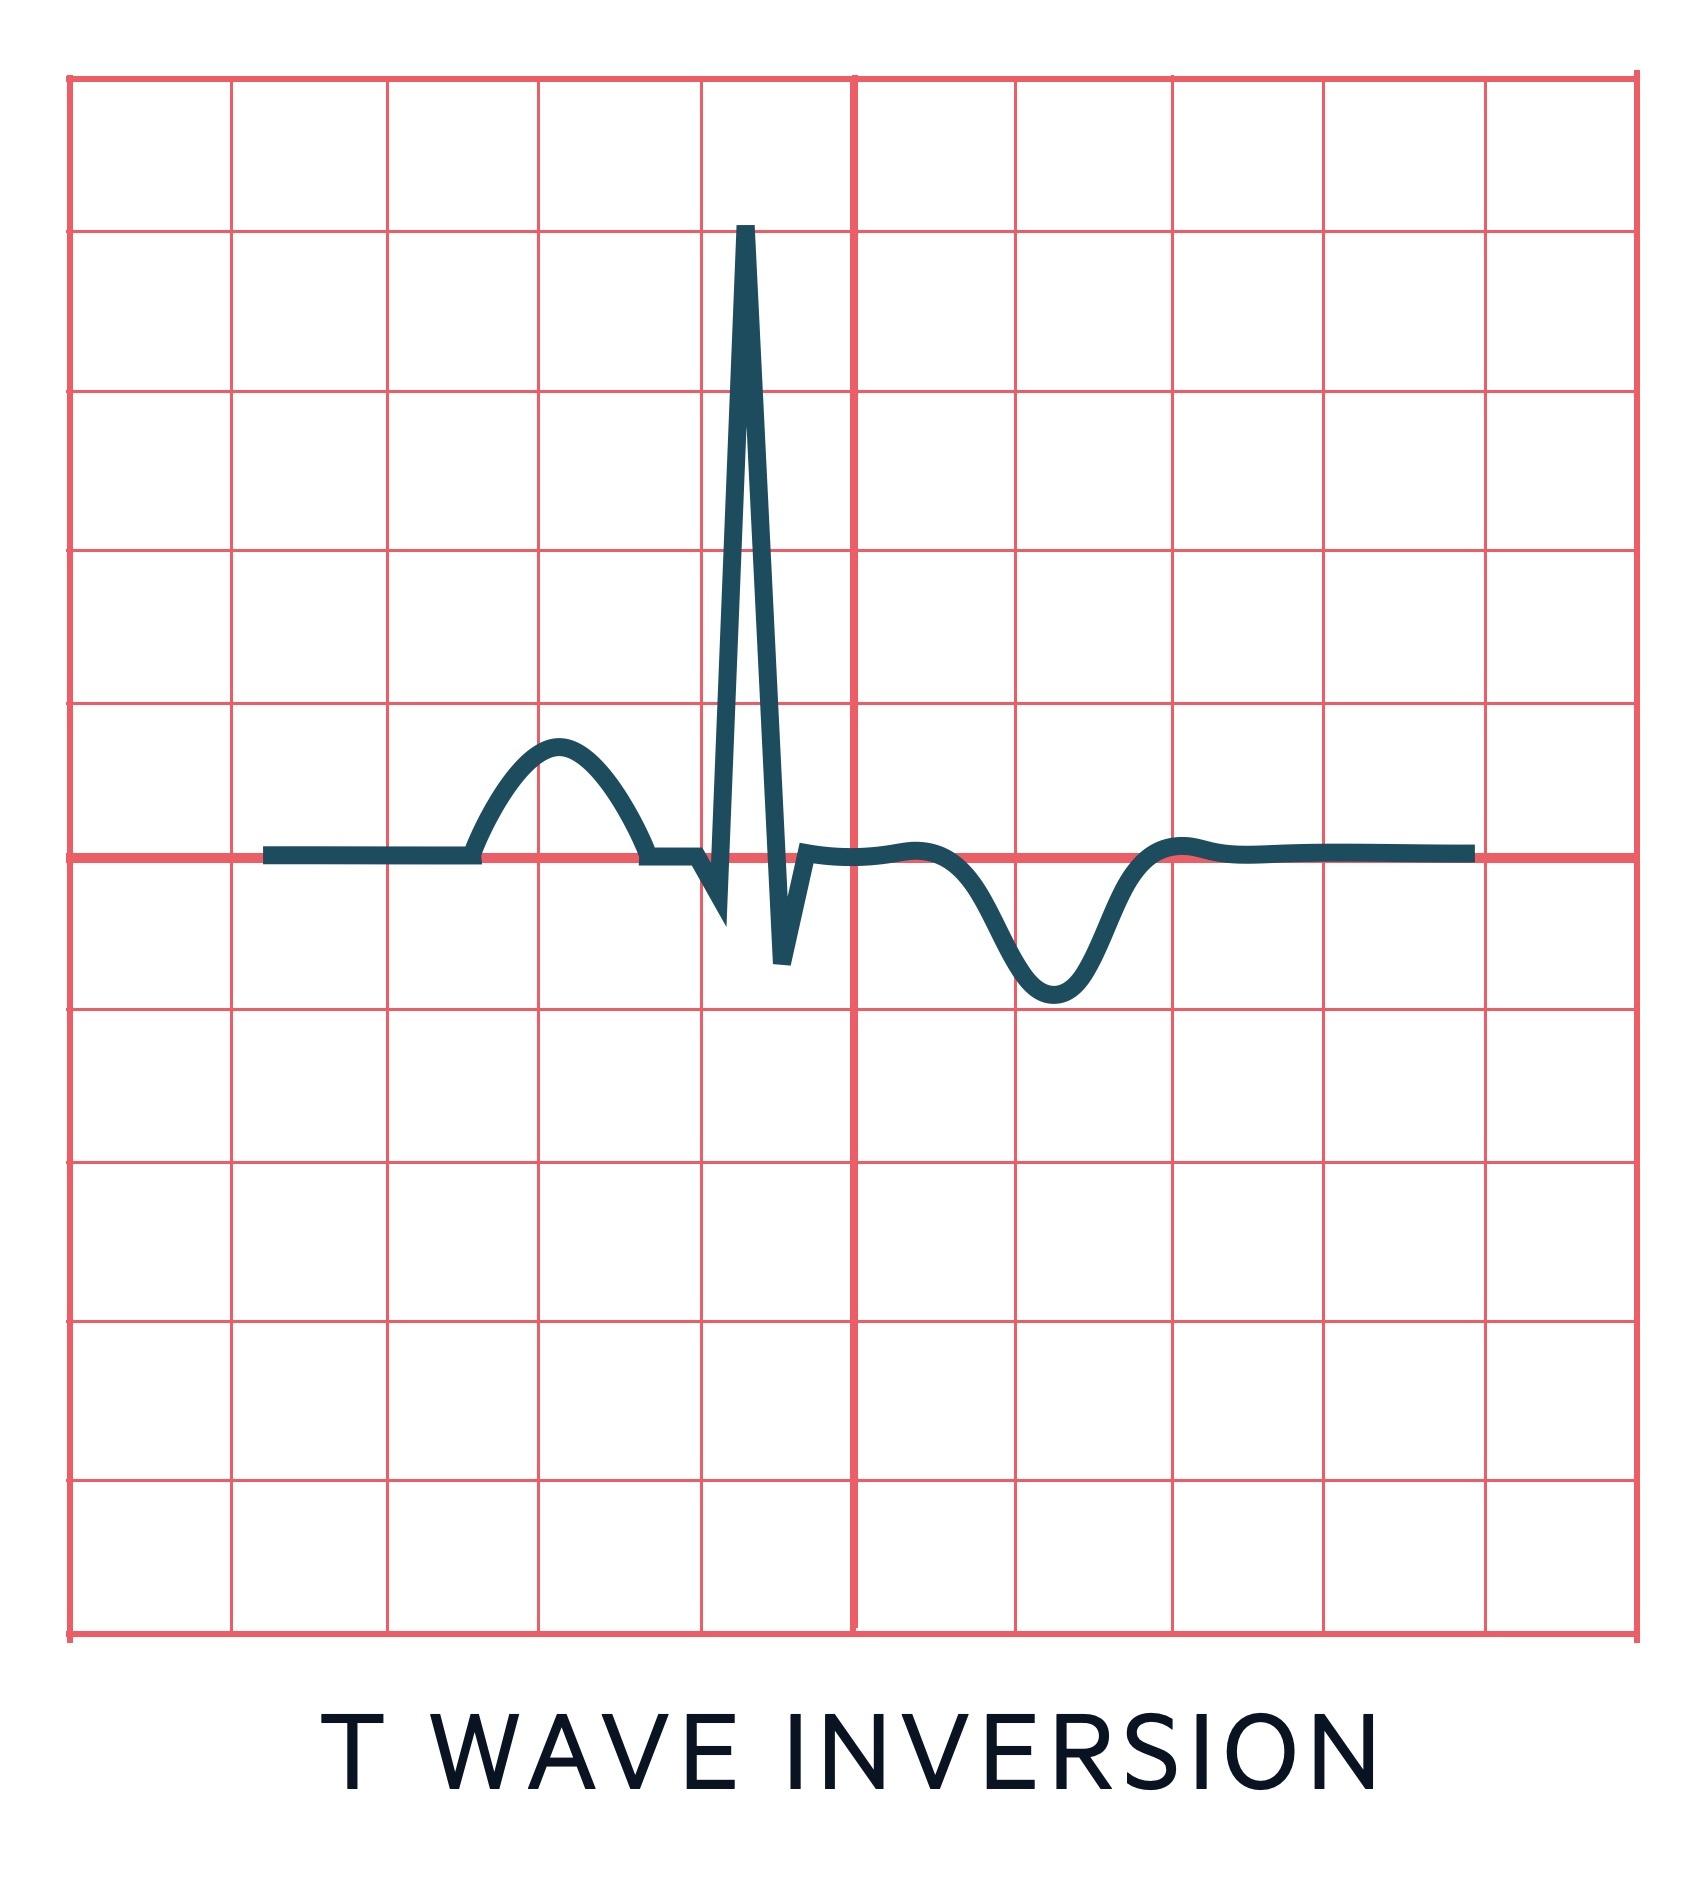 T wave inversion